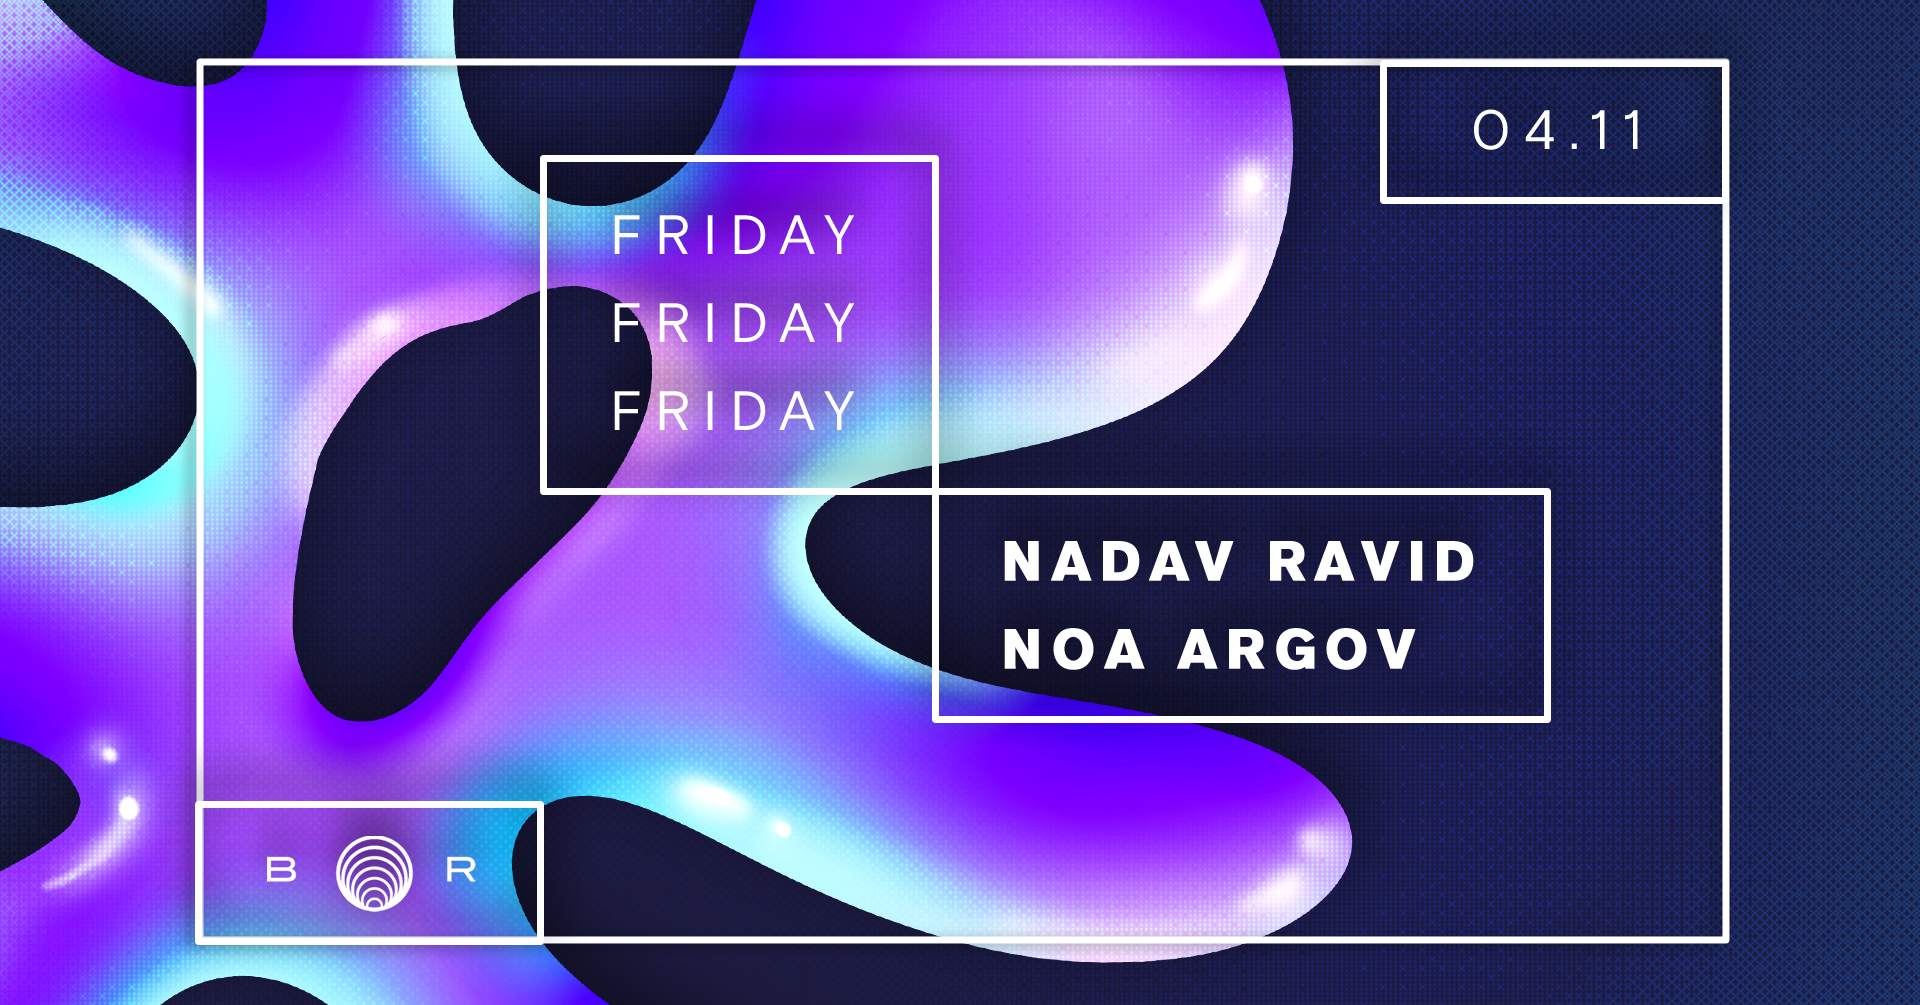 NOA ARGOV & NADAV RAVID - Página frontal